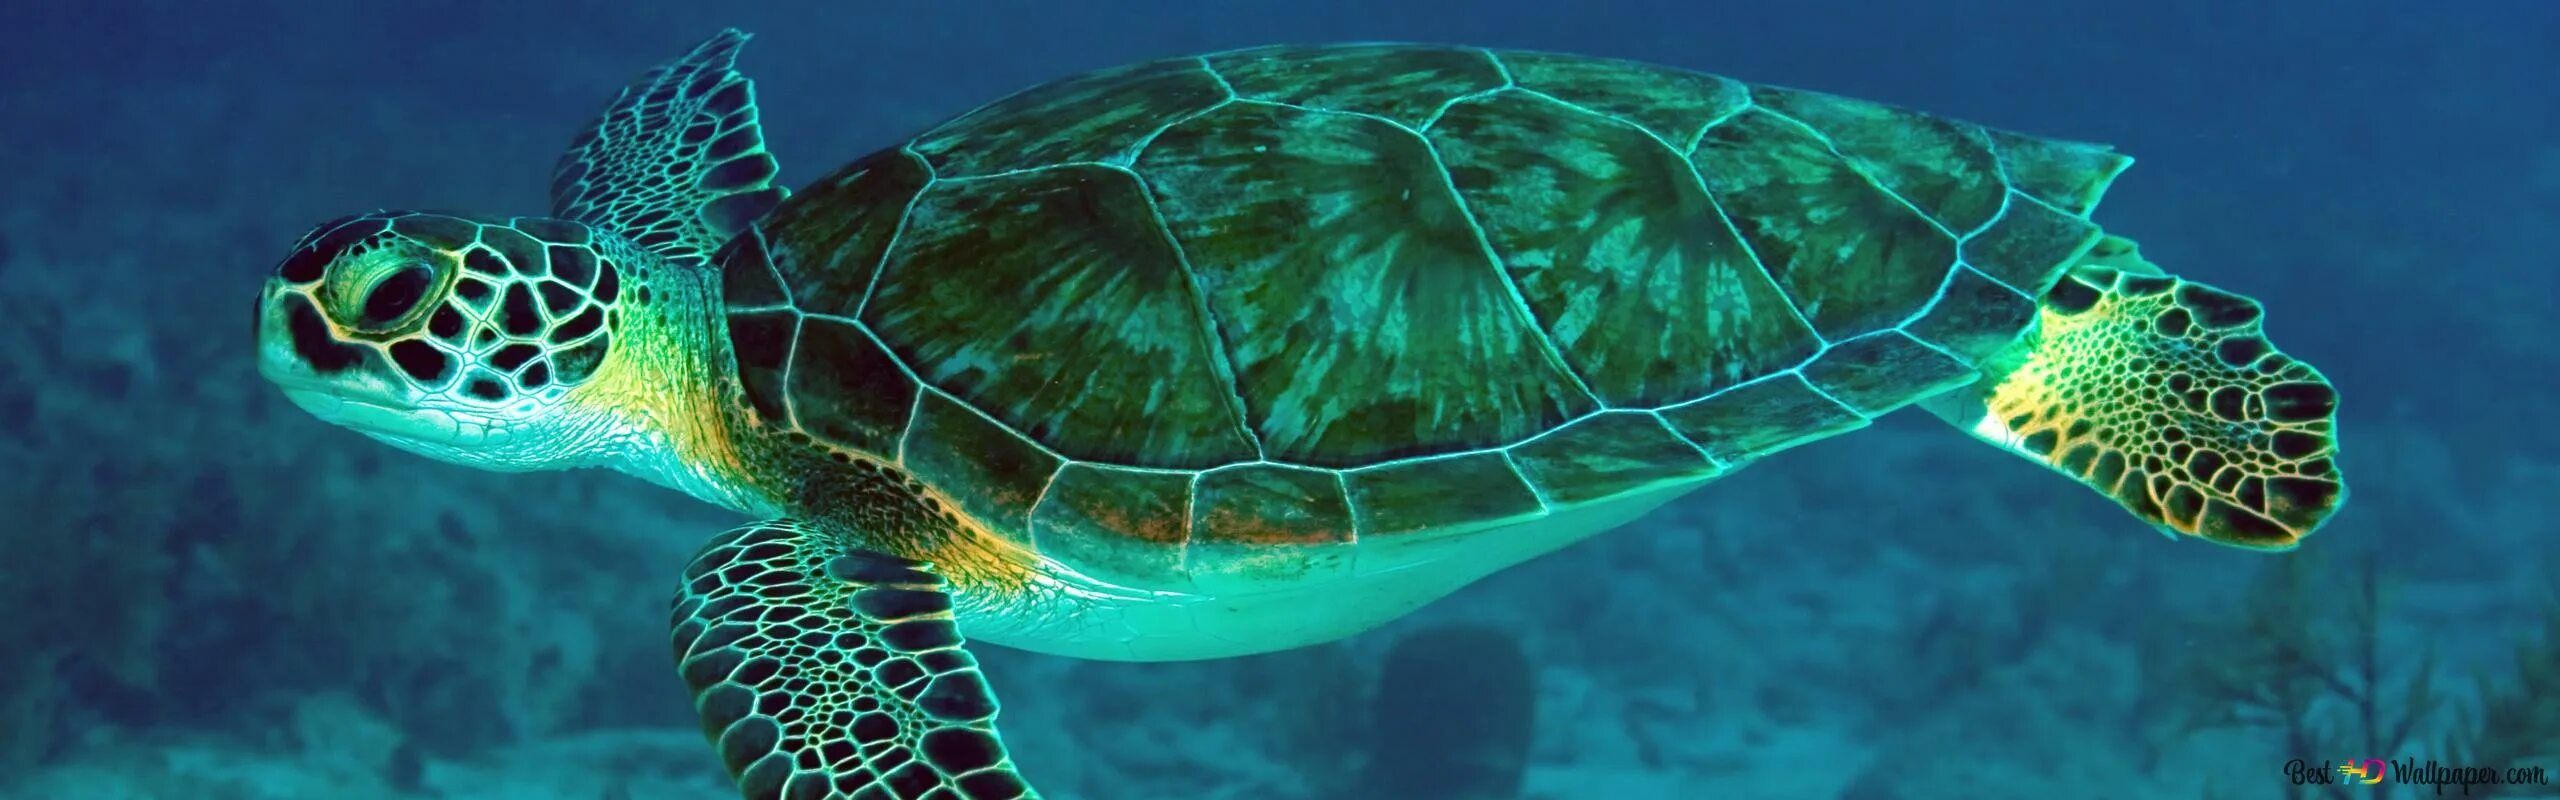 Среда обитания зеленой черепахи. Зеленая суповая черепаха. Морская черепаха. Большая морская черепаха. Большая зеленая морская черепаха.